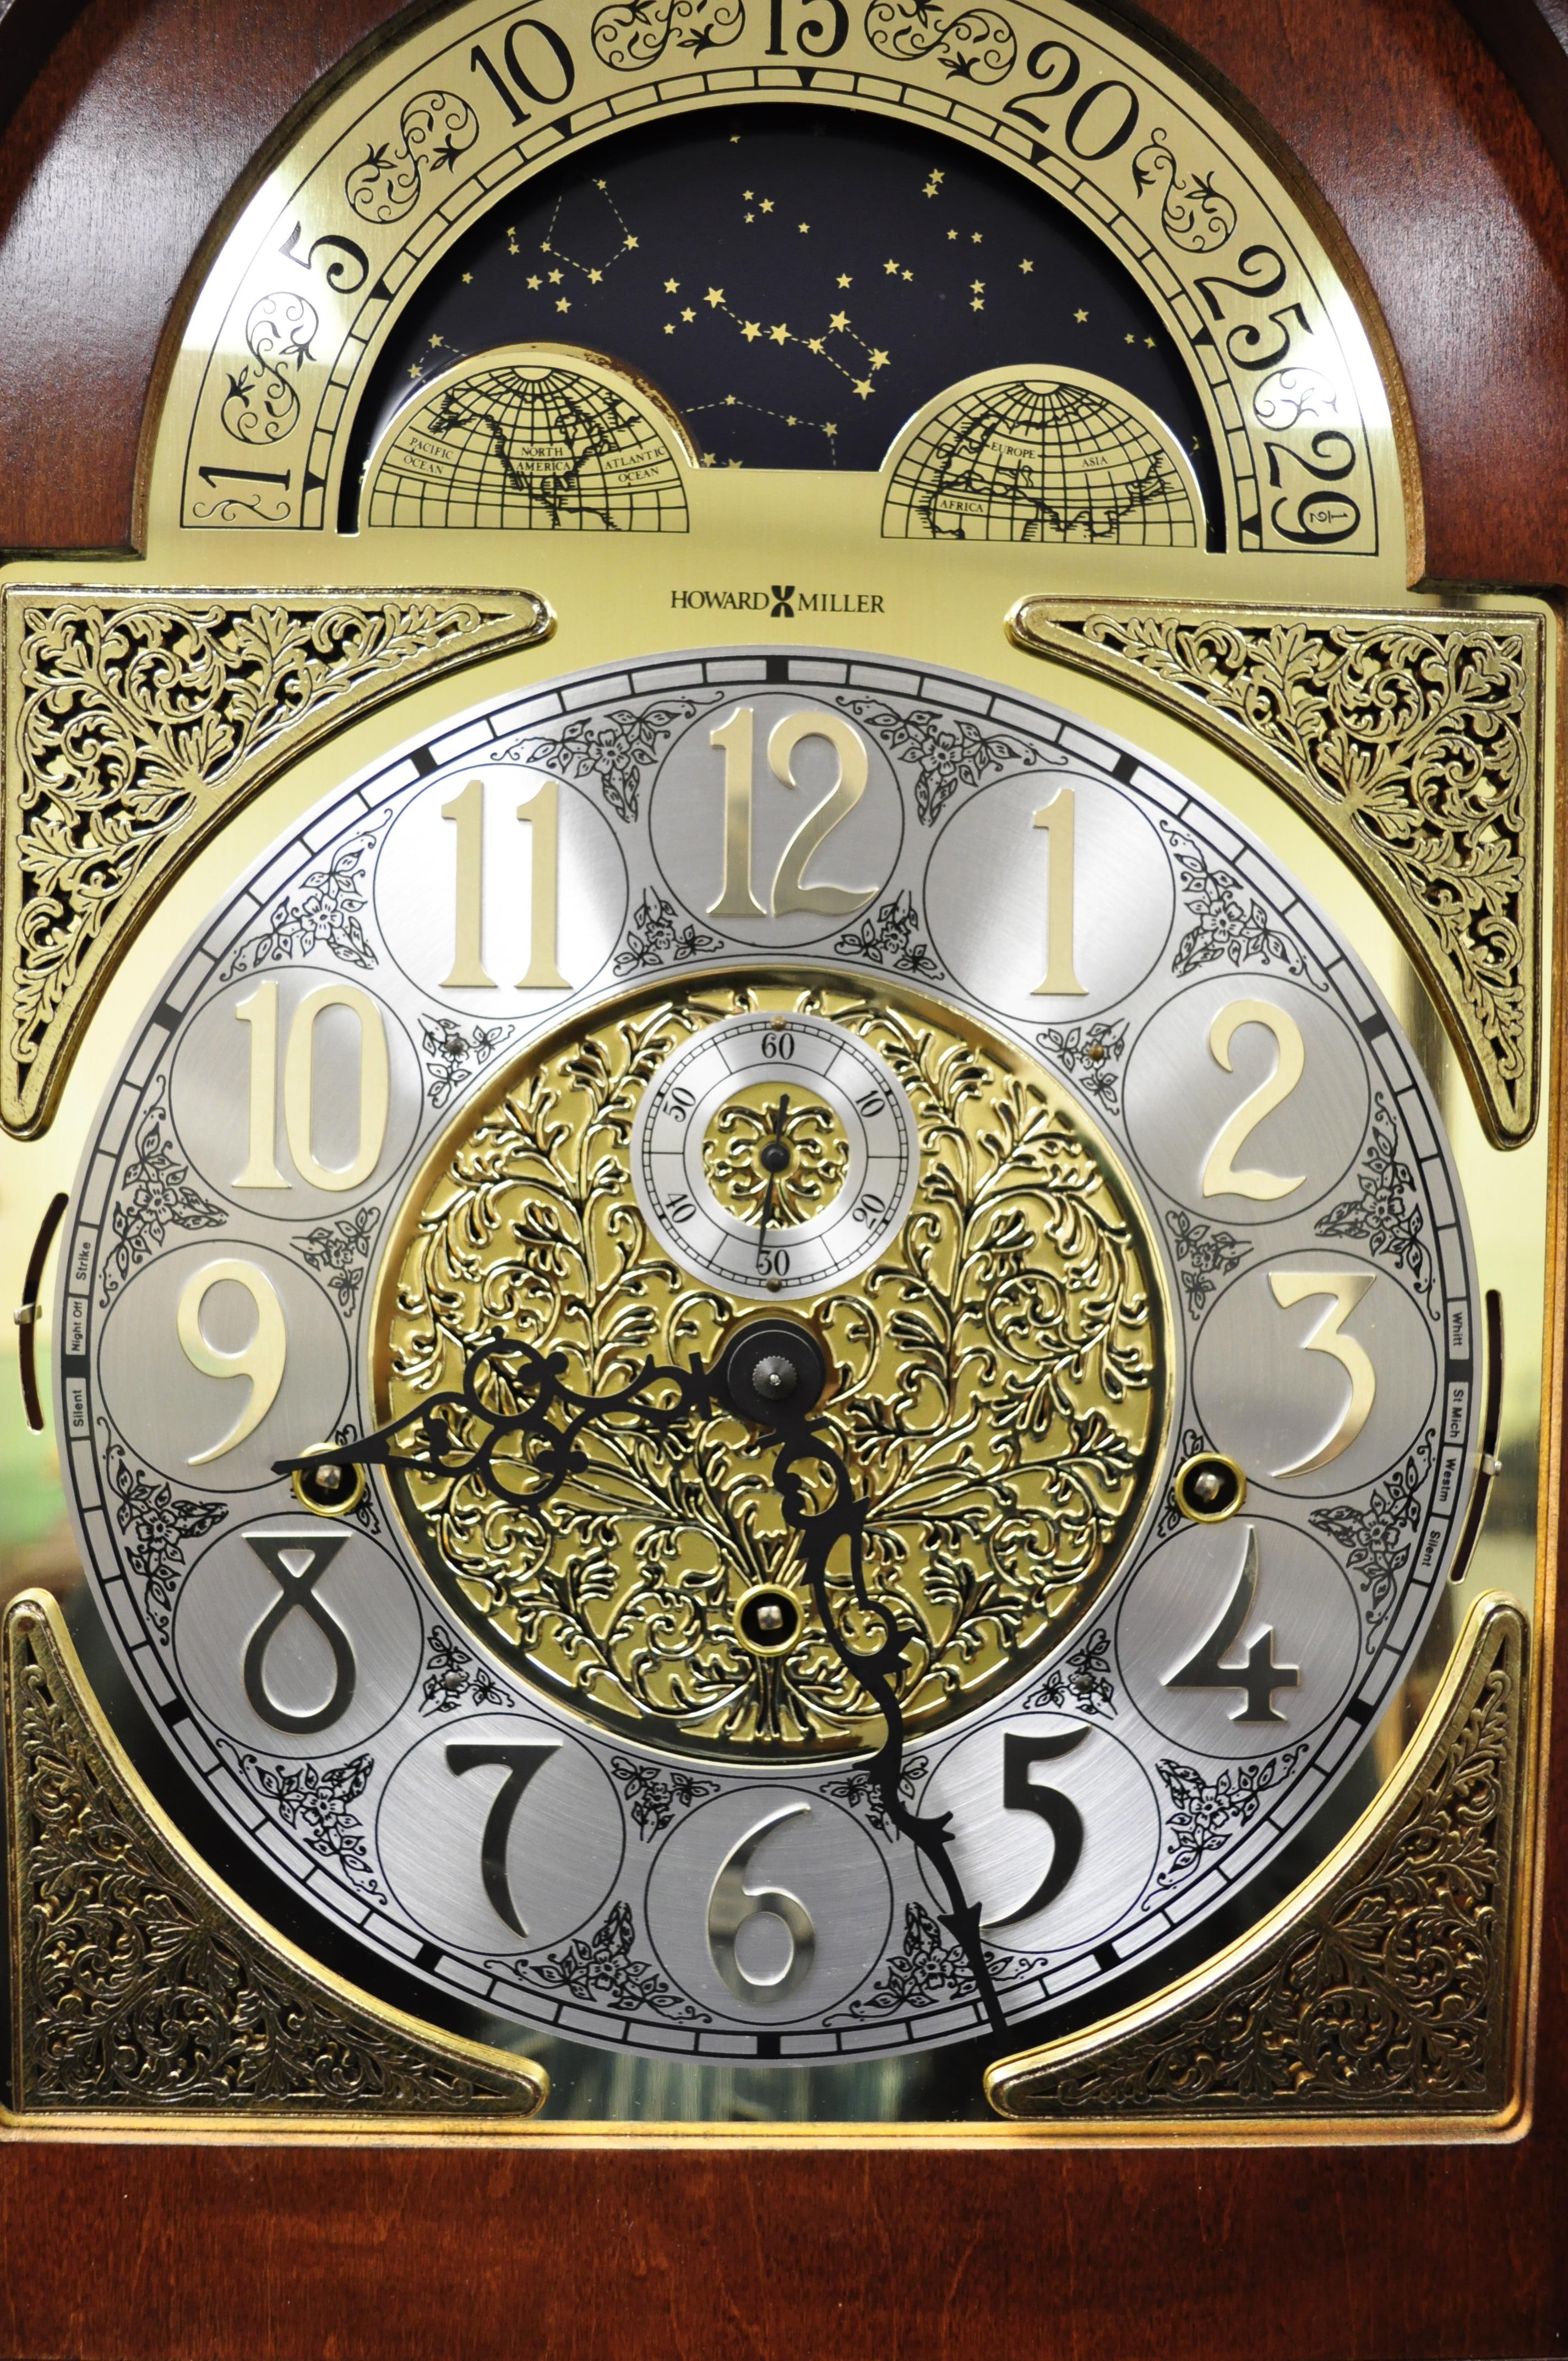 are howard miller clocks valuable